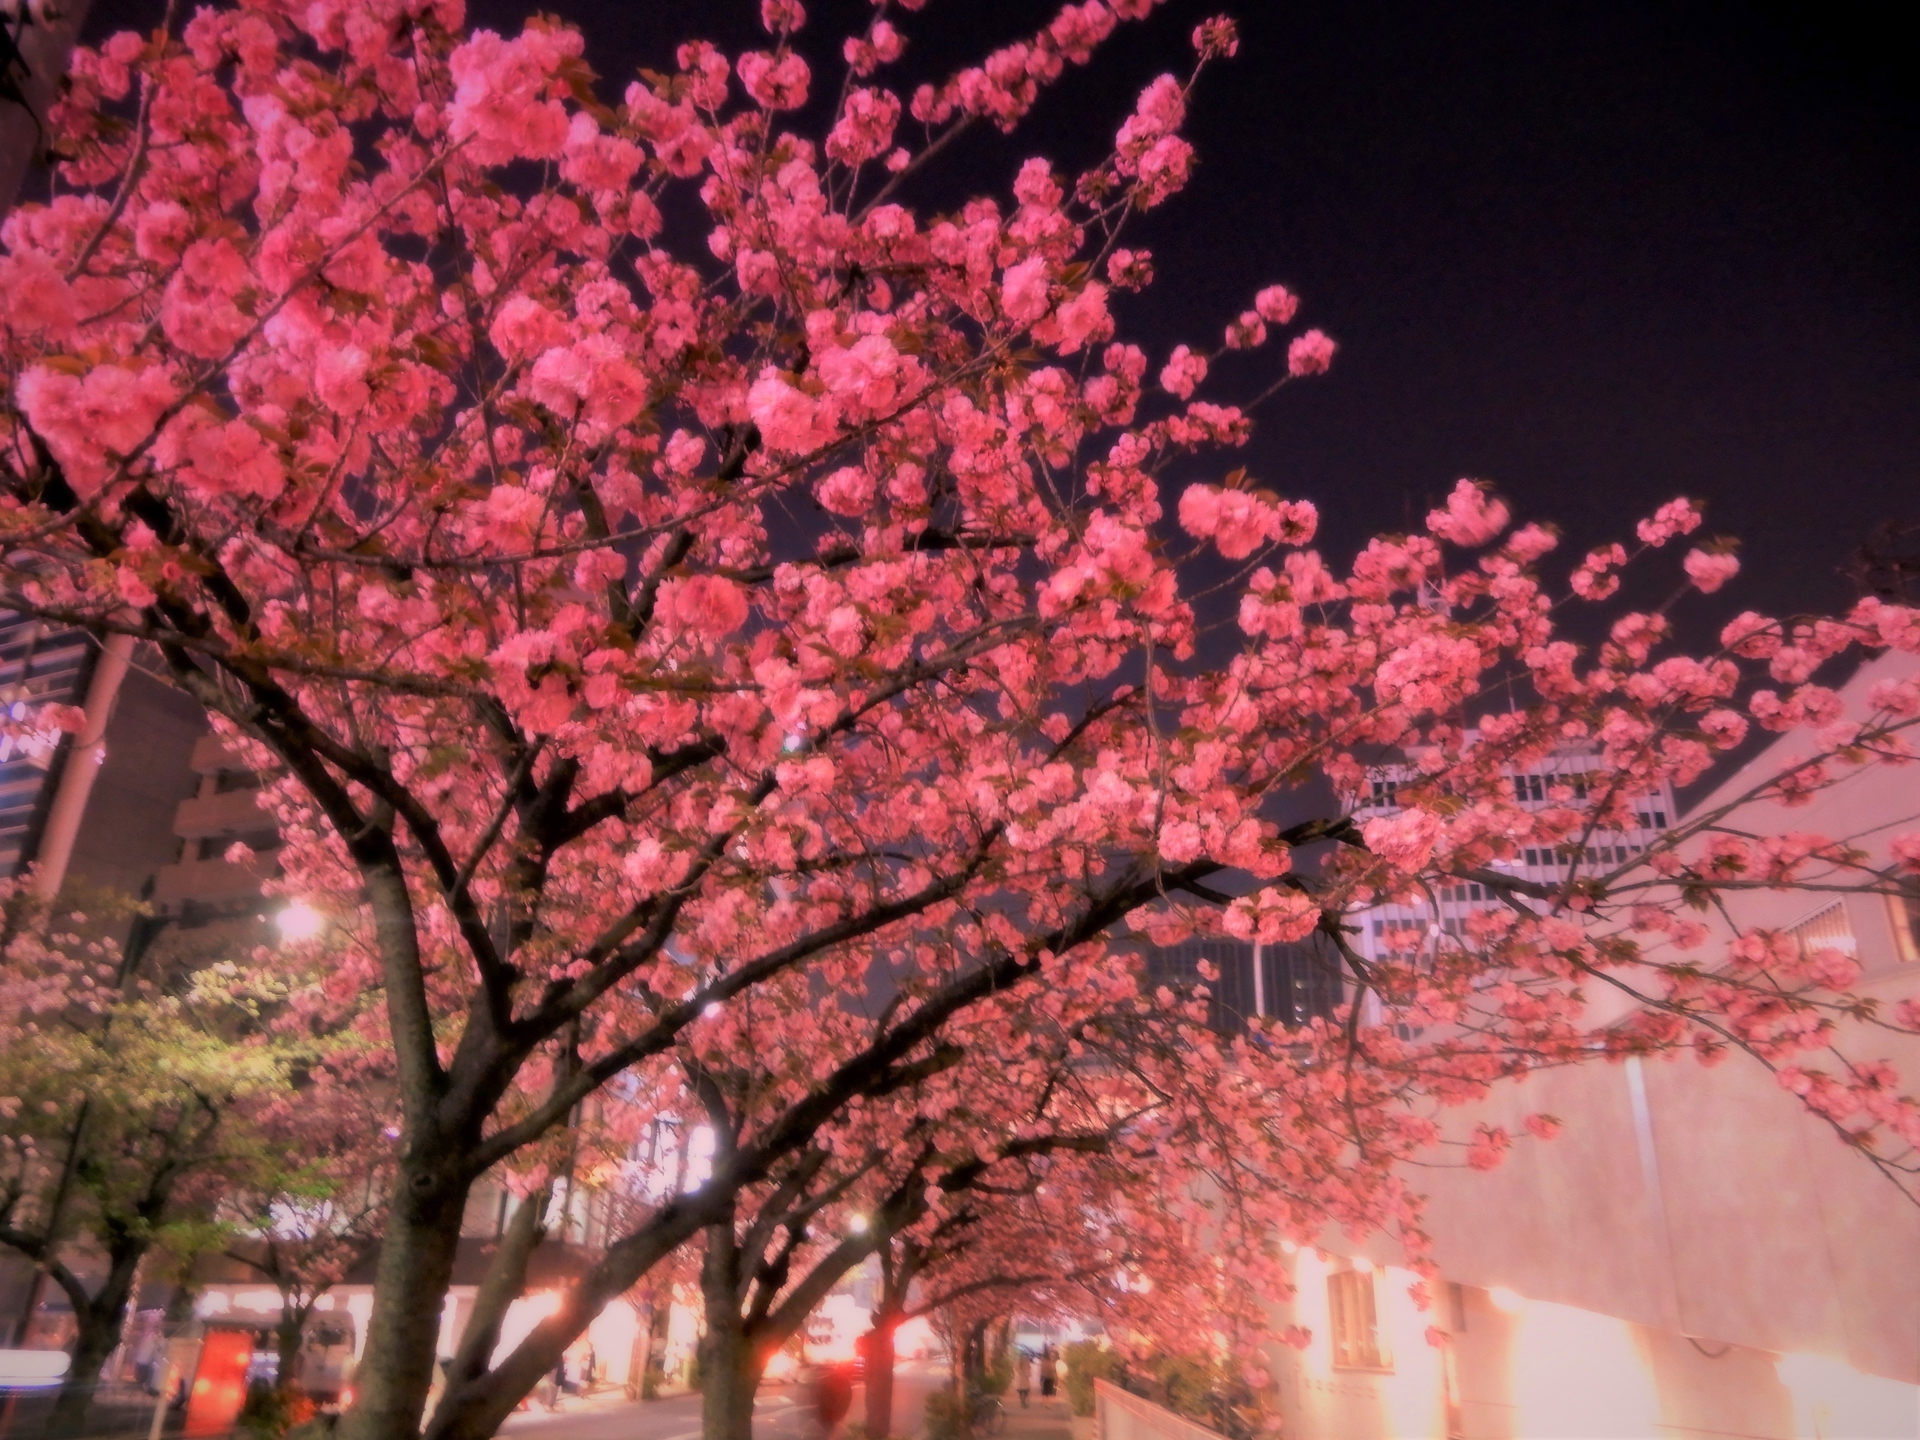 日本の風景 銀座一丁目の夜桜 壁紙19x1440 壁紙館